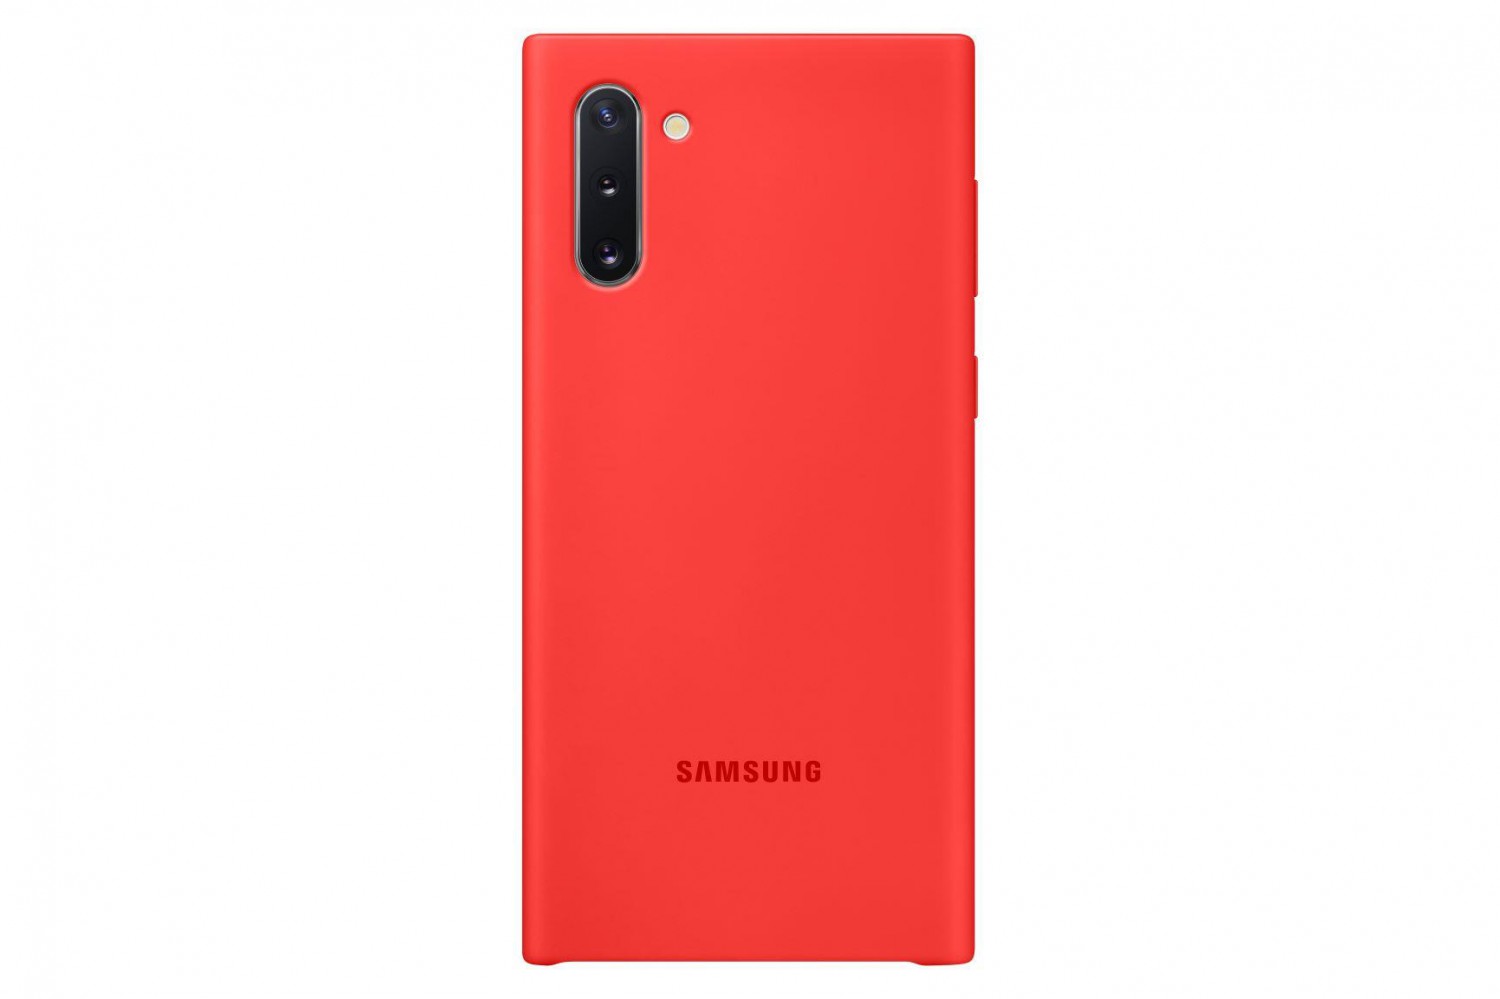 Silikonové pouzdro Silicone Cover EF-PN970TREGWW pro Samsung Galaxy Note 10, červená